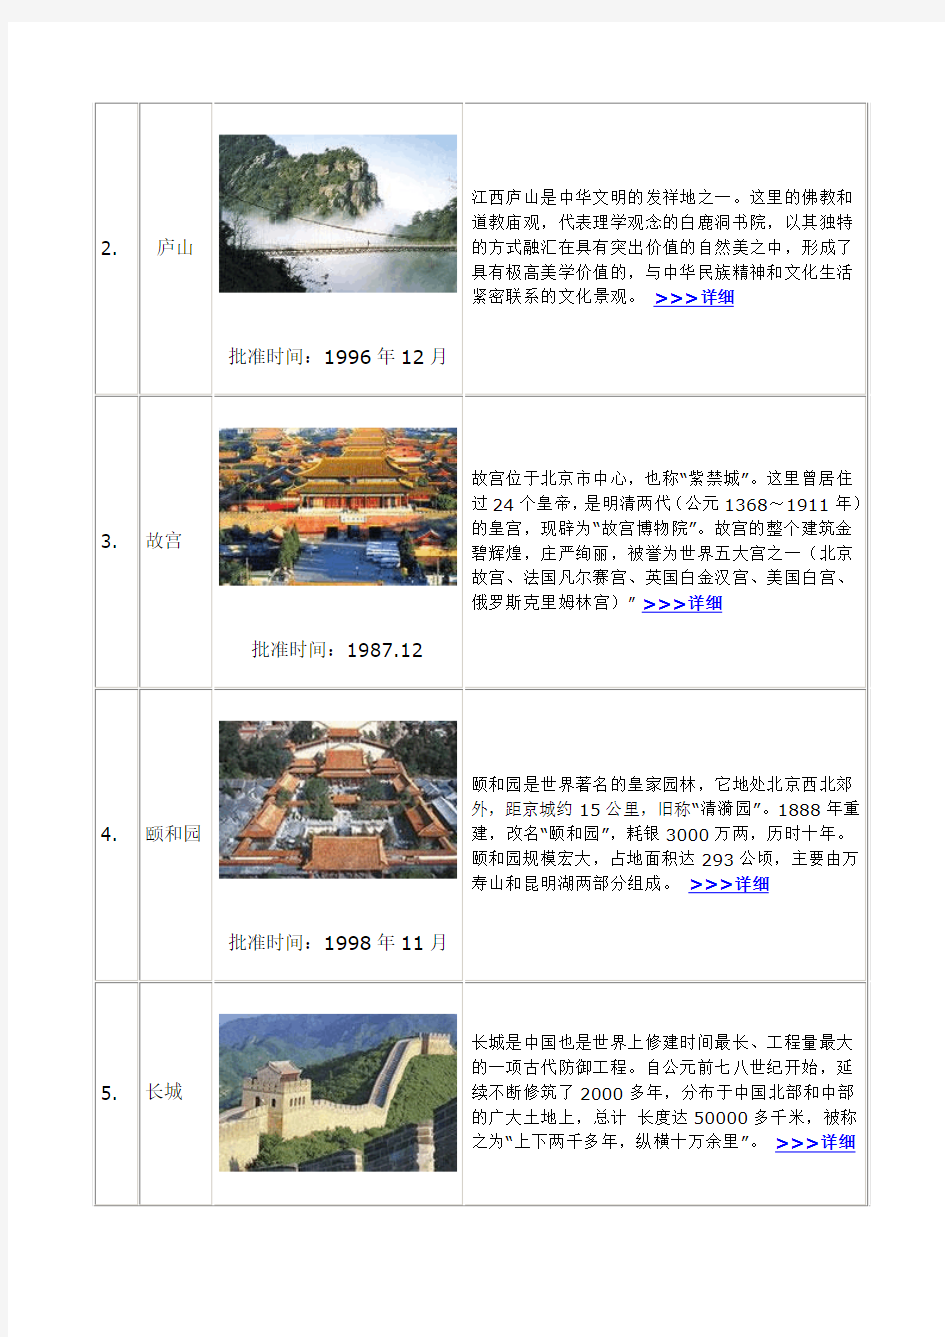 中国45项世界遗产名录一览表 总数排第2位